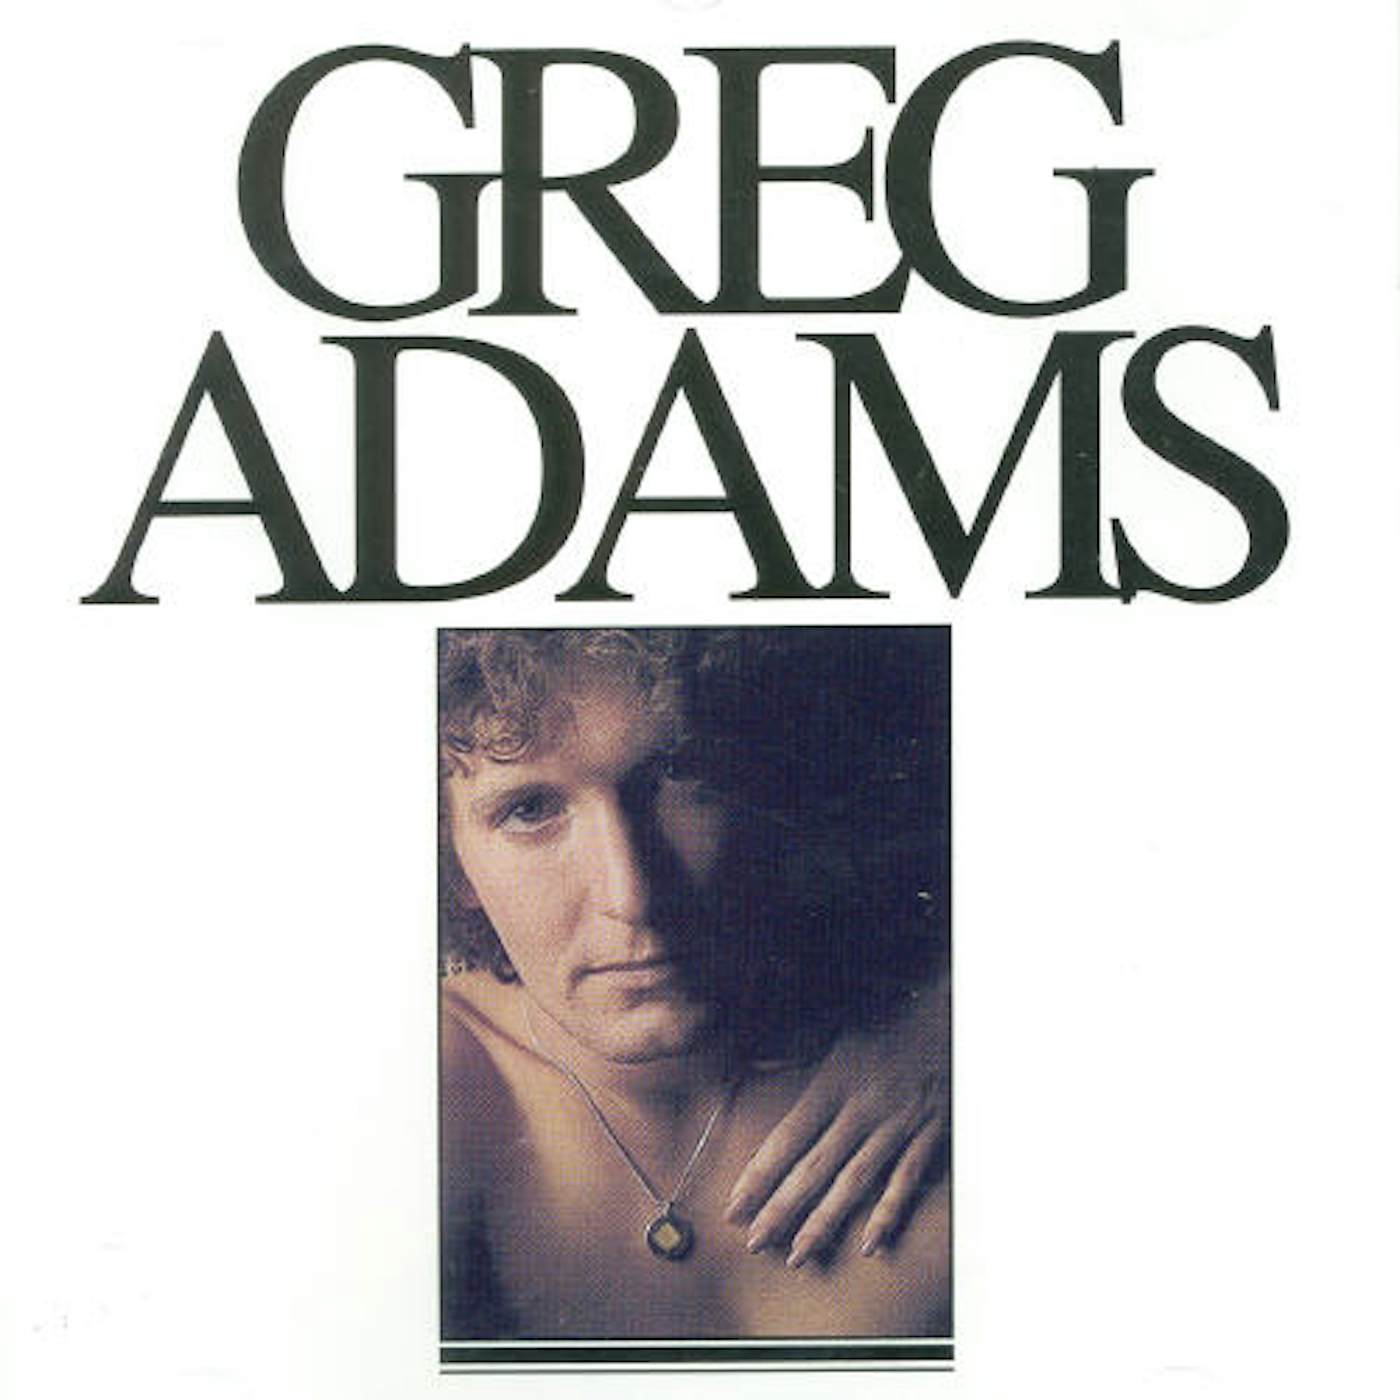 GREG ADAMS CD